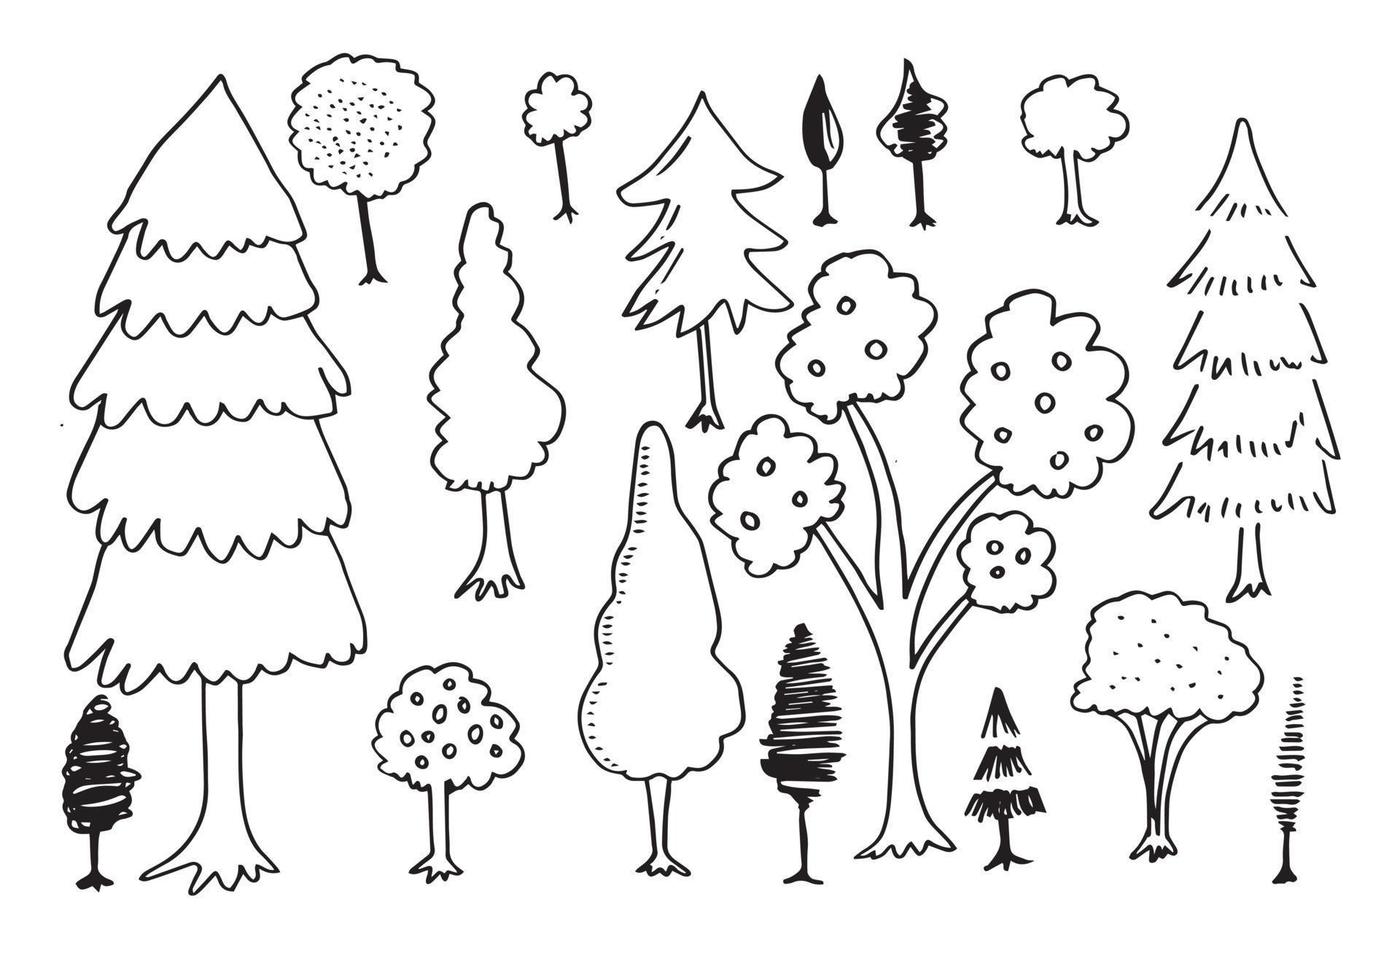 doodle park bos naaldboom abstracte silhouetten geschetst bomen in zwarte kleur collectie set vector